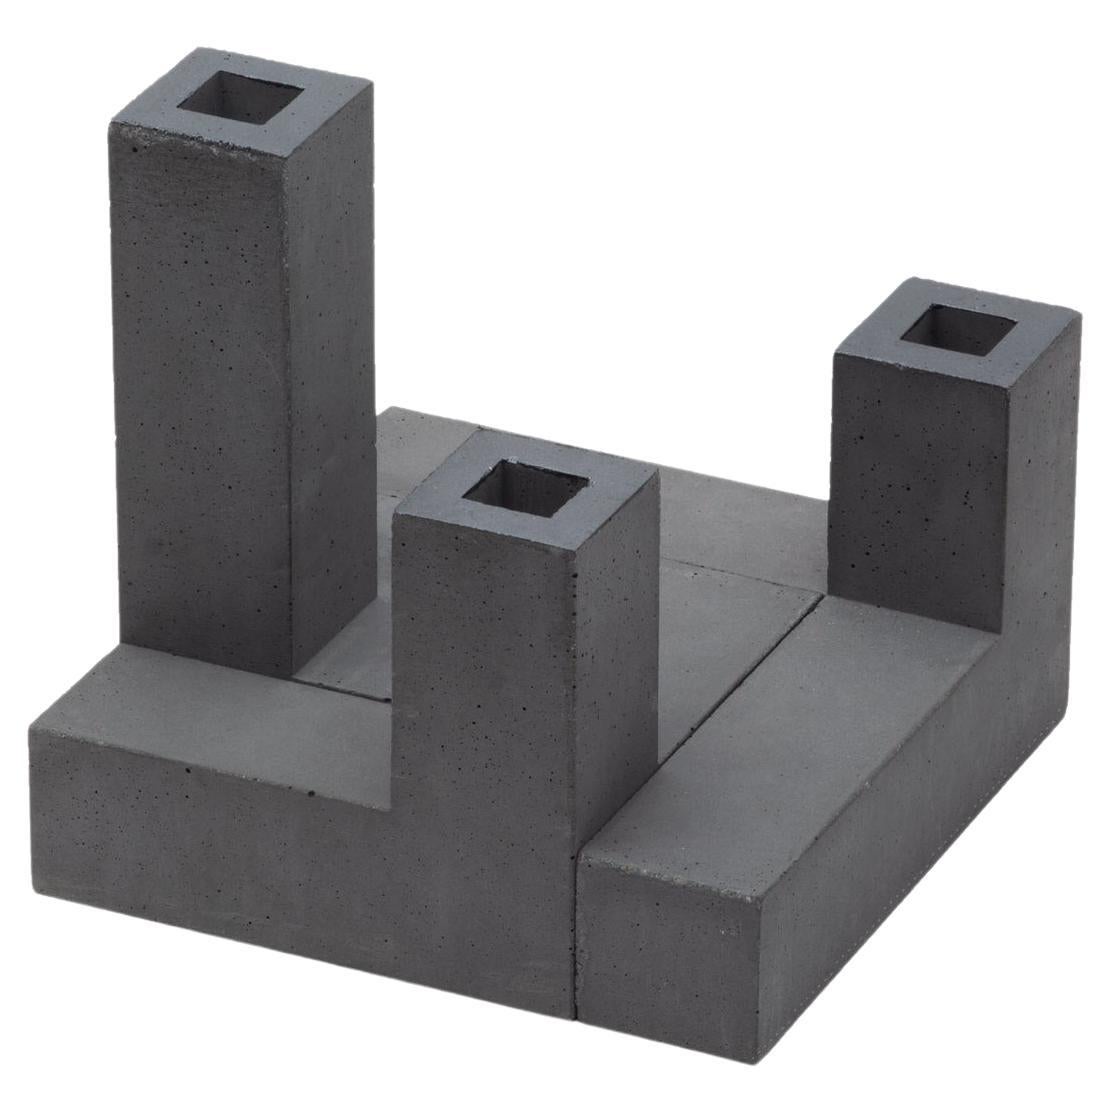 Tre Torri - Natural Concrete - Design Modular Vase Paolo Giordano Cement Cast For Sale